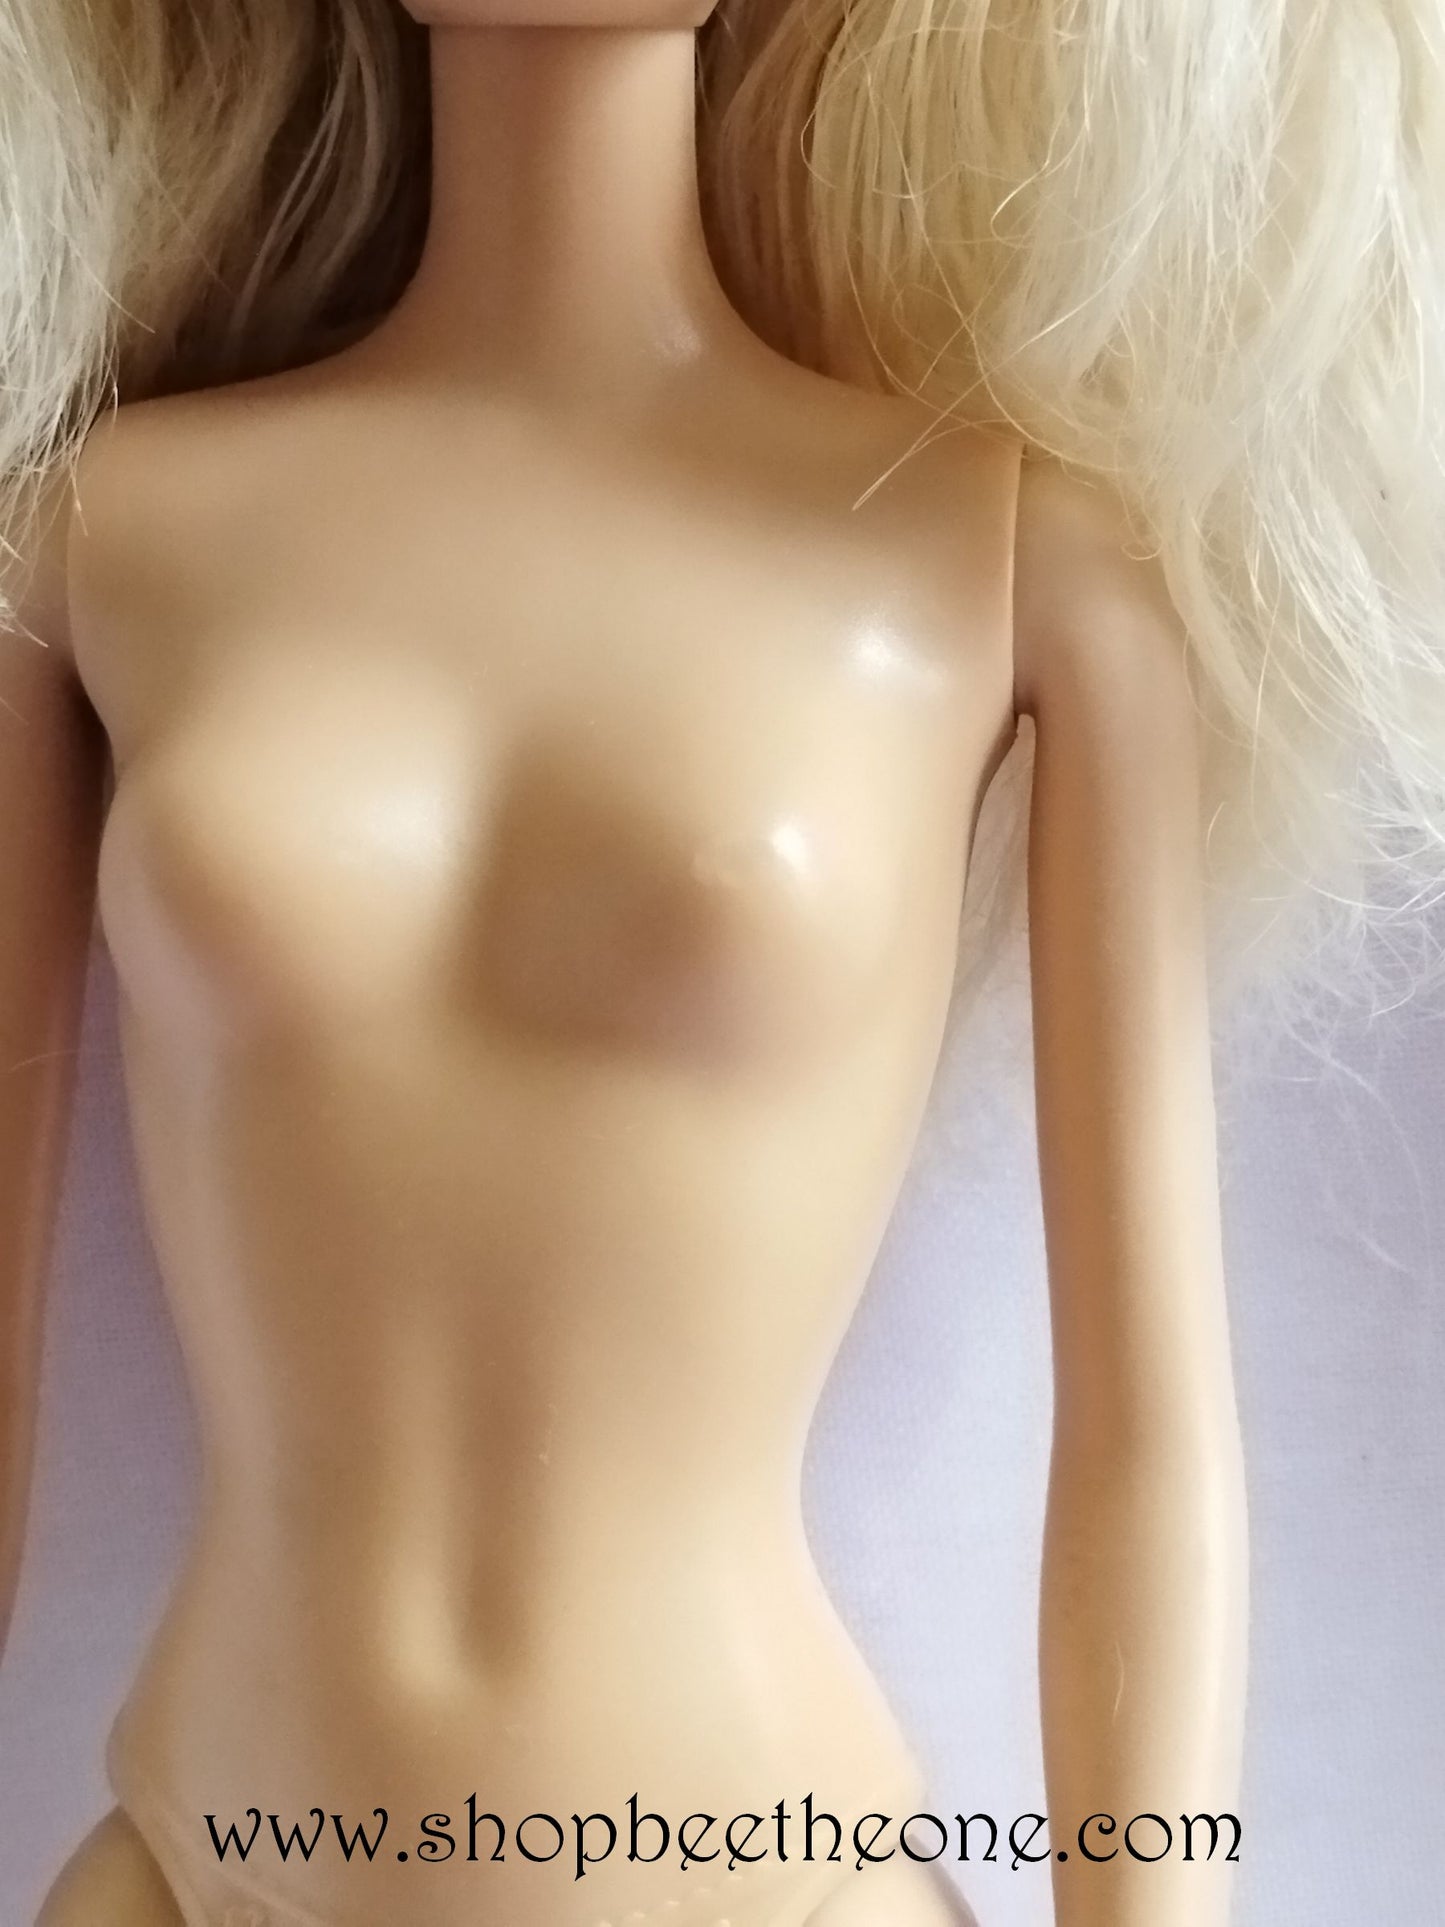 Barbie Chic BCN30 - Mattel 2014 - Poupée